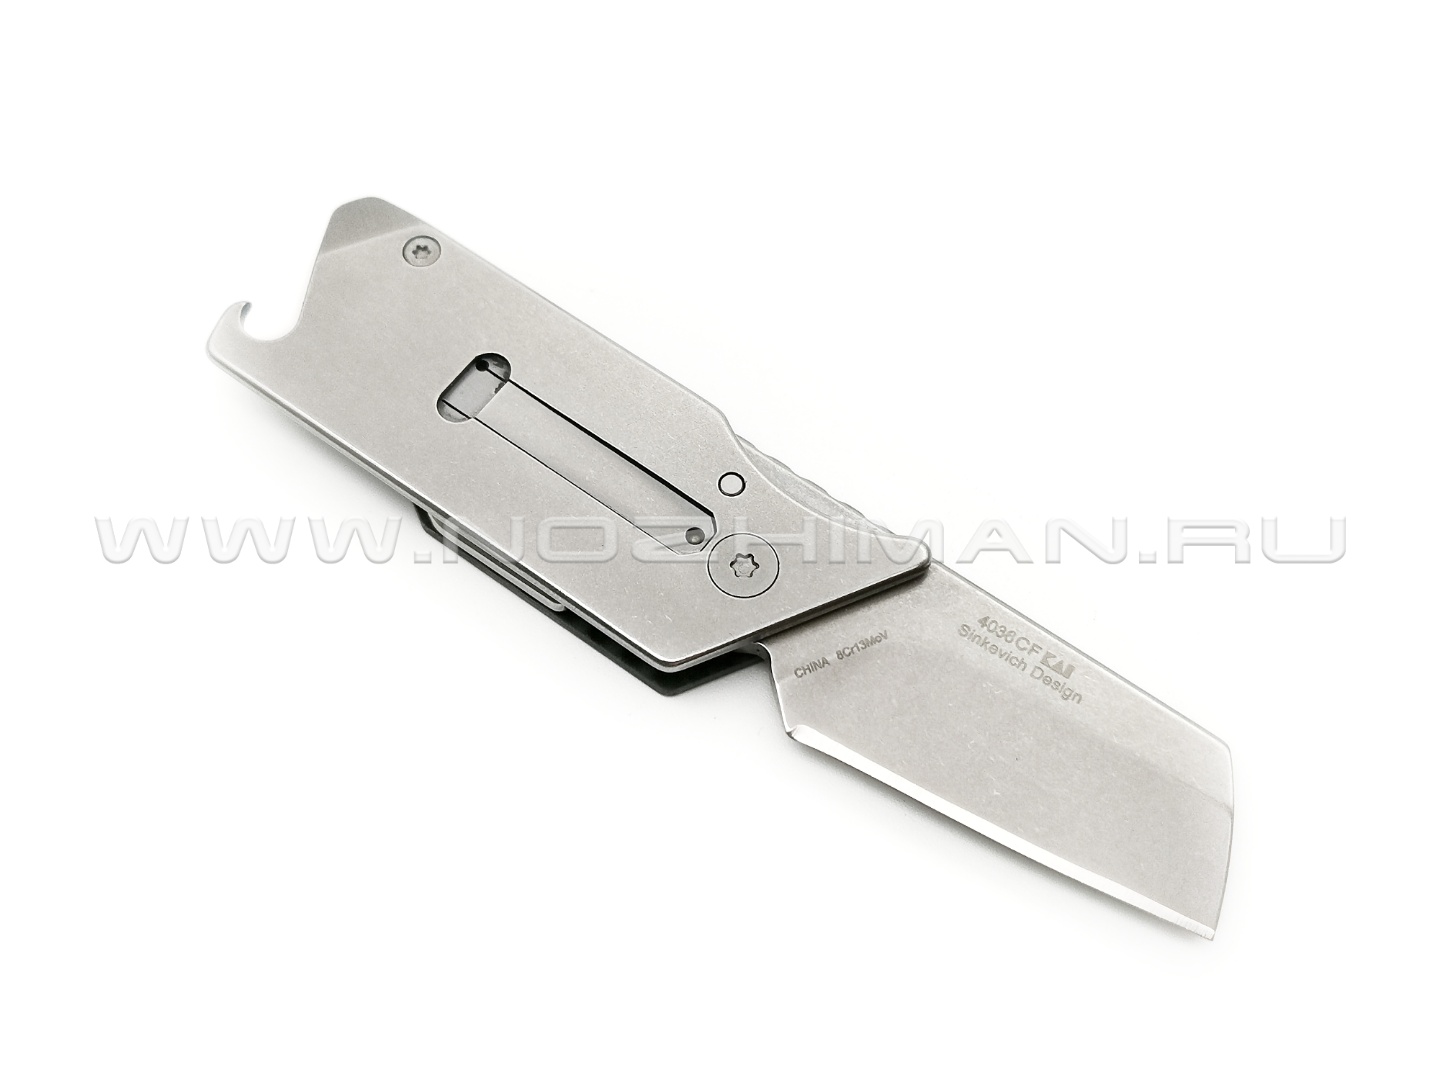 Нож Kershaw Pub 4036CF сталь 8Cr13MoV рукоять Carbon fiber, stainless steel